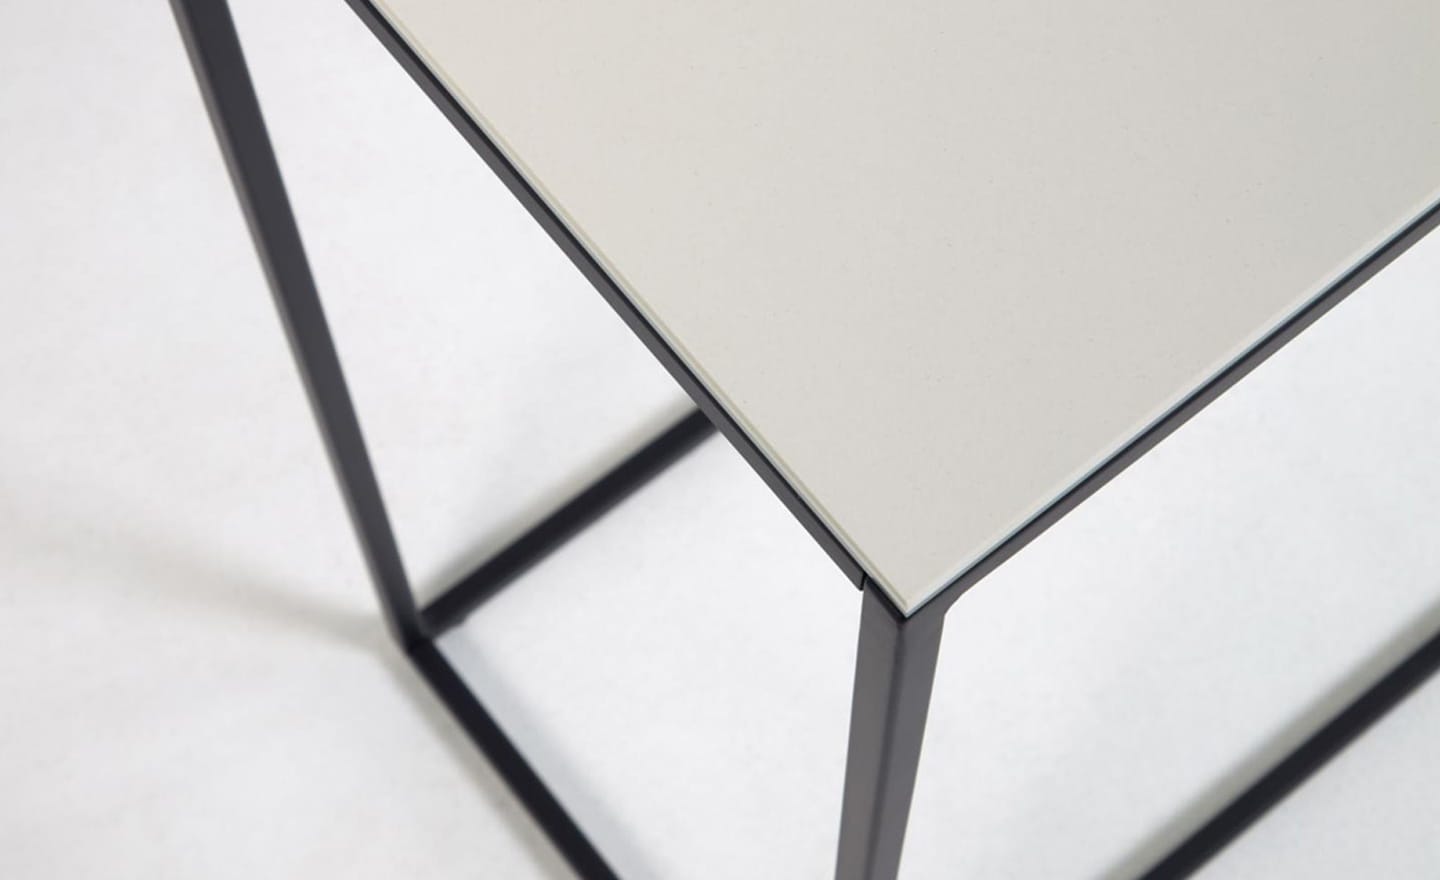 Consola Rewena Kalos Branco, tampo porcelânico, estrutura em aço pintado de preto, design moderno.